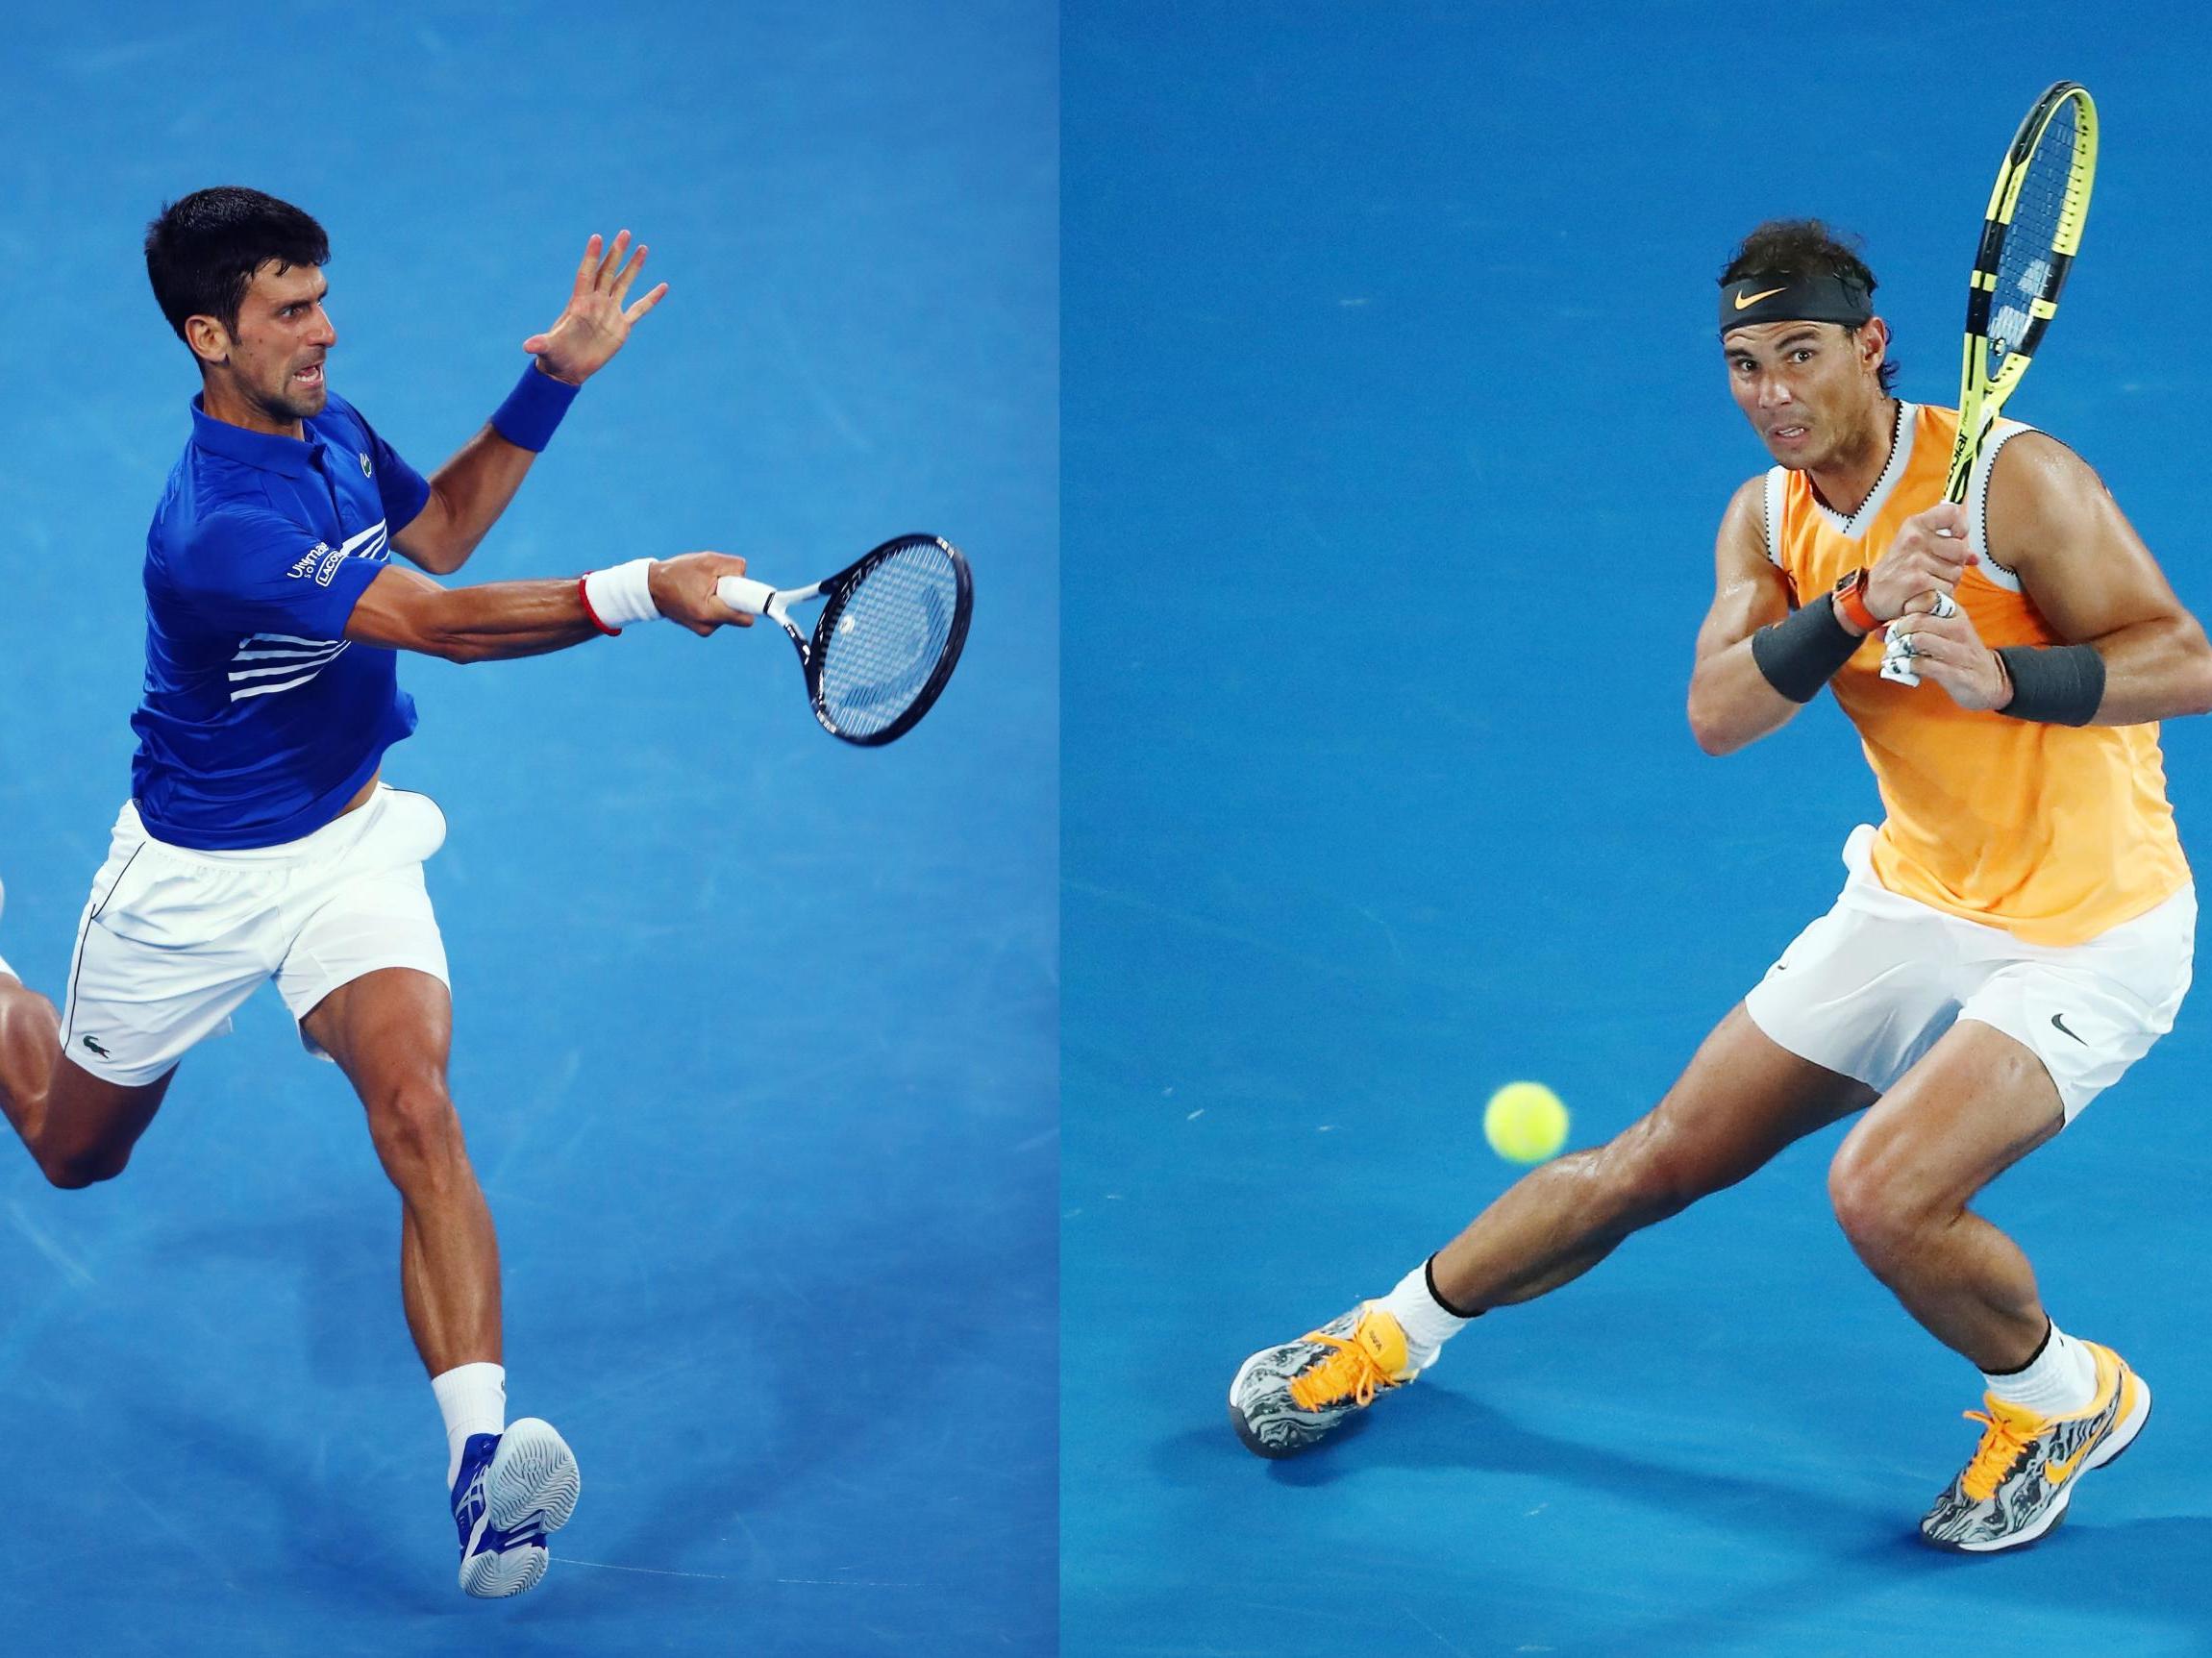 Djokovic will take on Nadal